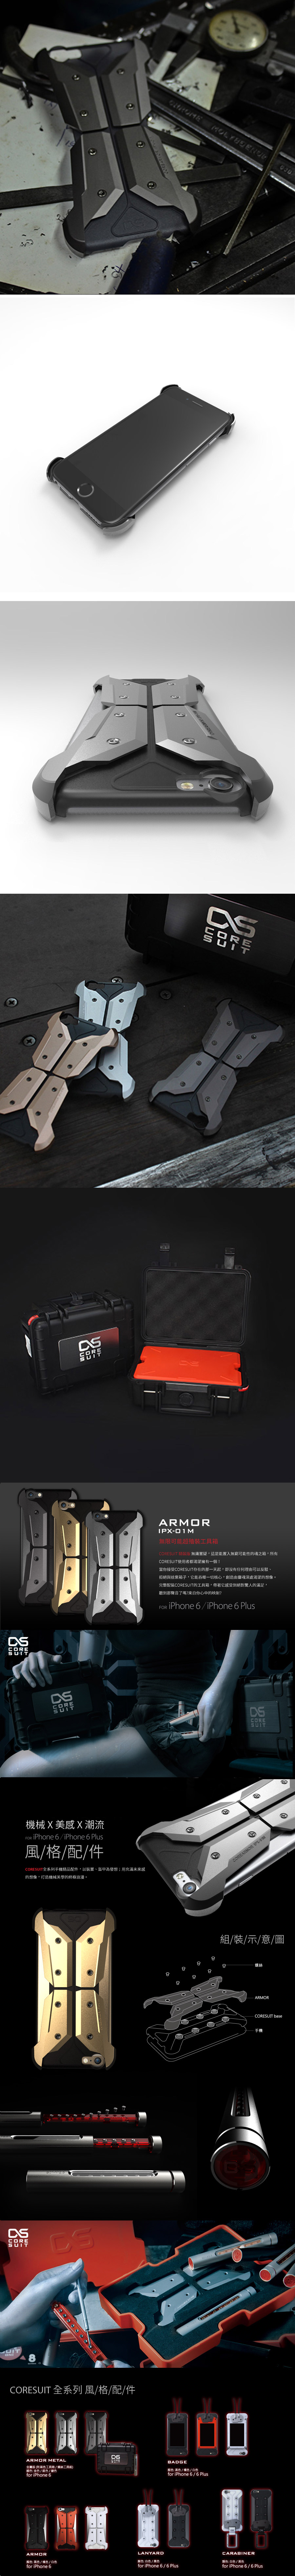 CORESUIT ARMOR METAL BOX 金屬飾板 手機殼 (含工具箱) iPhone 6/6s 槍色